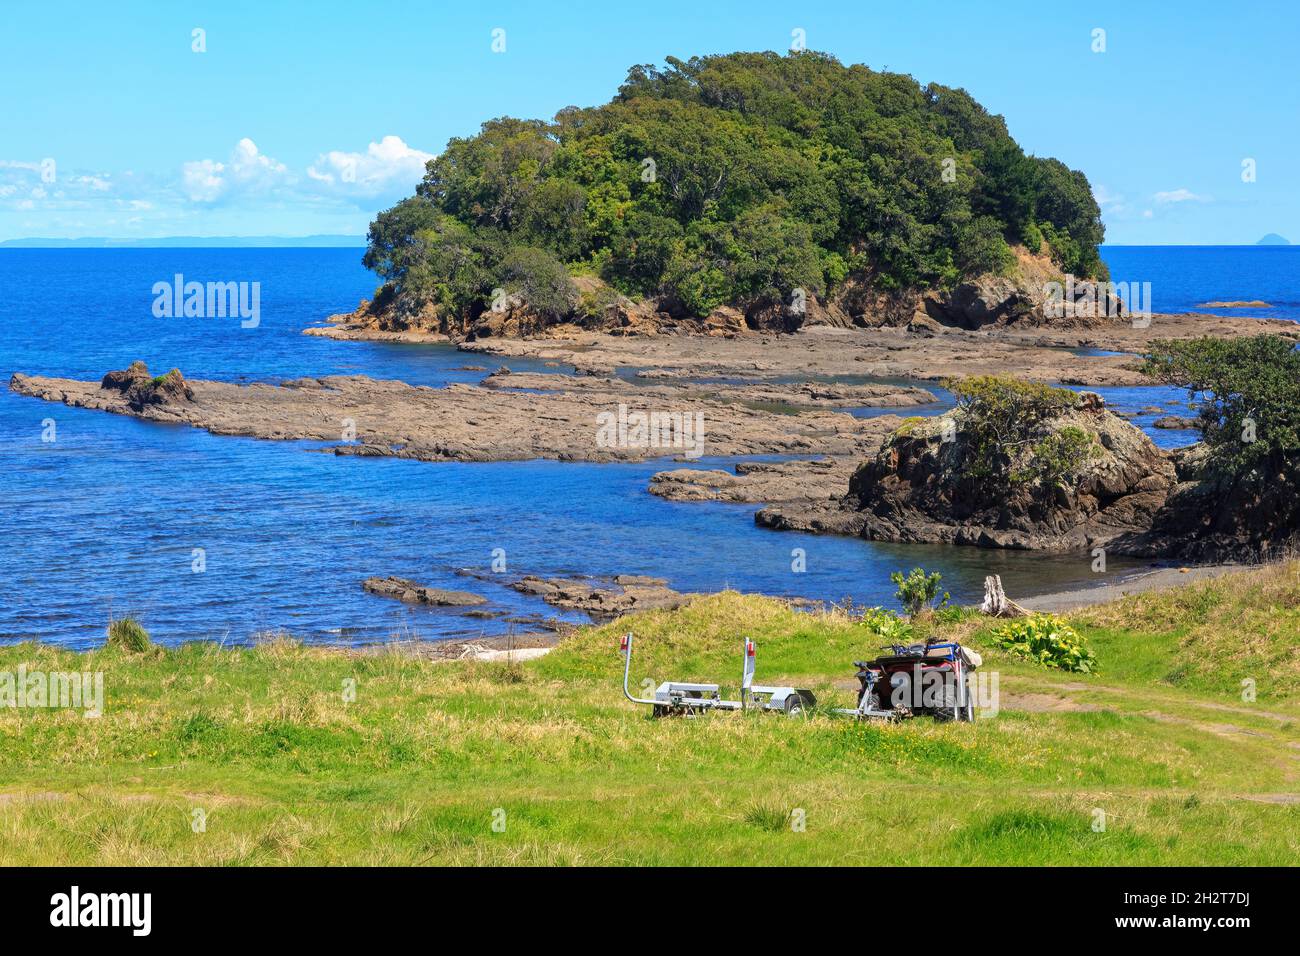 Costa en Little Awanui en el Cabo Este de Nueva Zelanda. Justo frente al mar está la Isla Motunui. Aparcado en el césped hay una quad bike Foto de stock